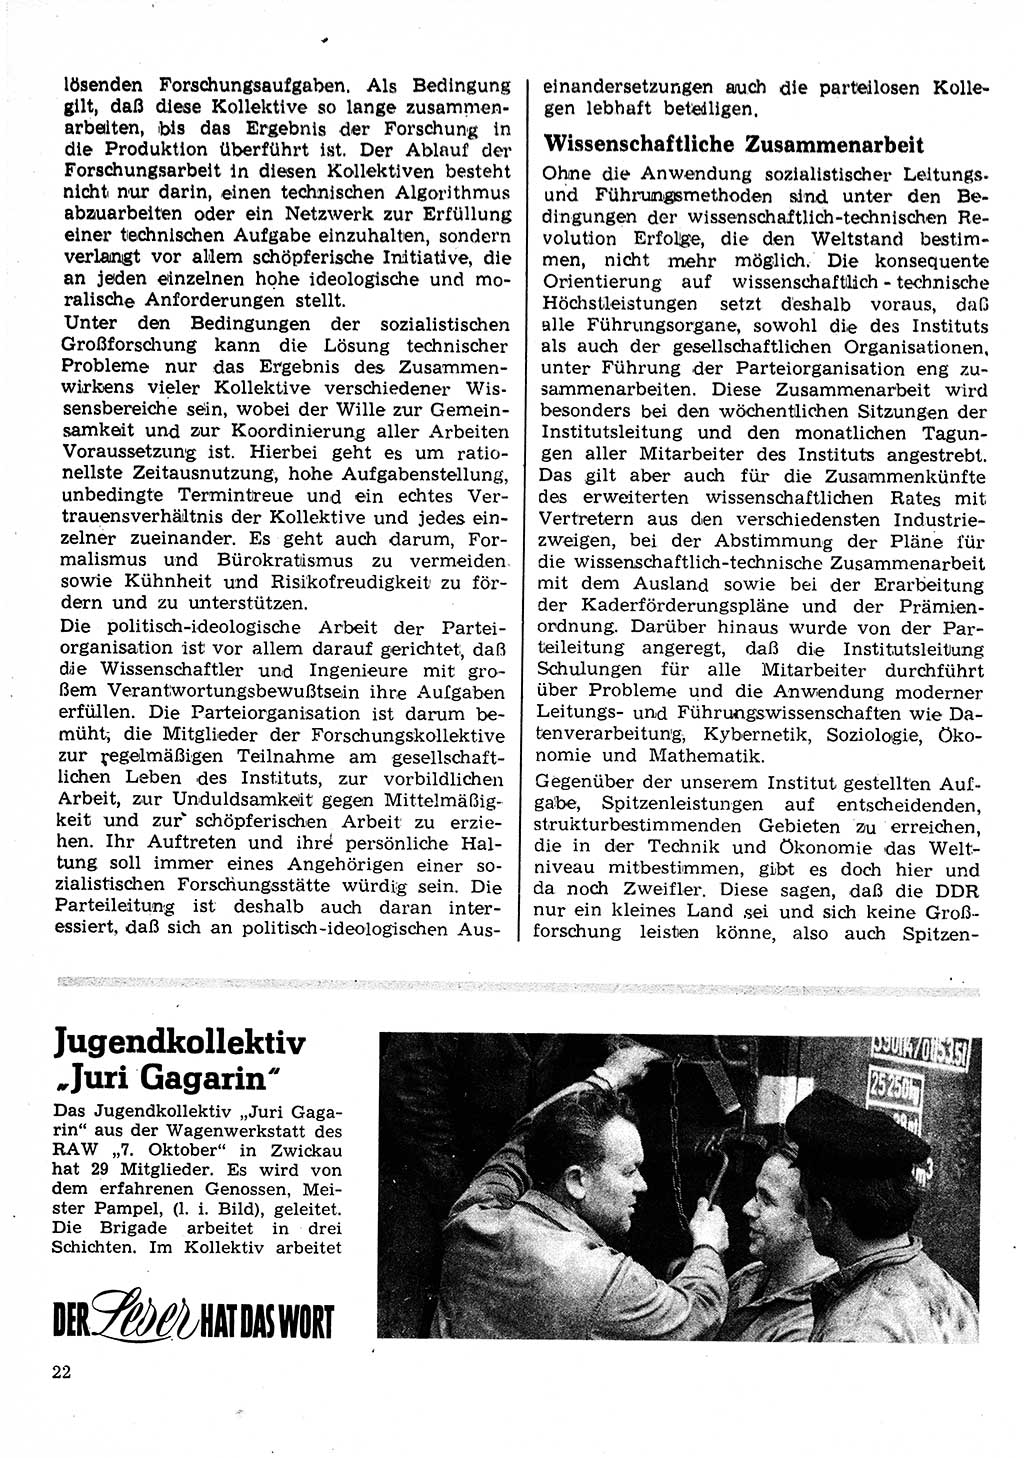 Neuer Weg (NW), Organ des Zentralkomitees (ZK) der SED (Sozialistische Einheitspartei Deutschlands) für Fragen des Parteilebens, 25. Jahrgang [Deutsche Demokratische Republik (DDR)] 1970, Seite 22 (NW ZK SED DDR 1970, S. 22)